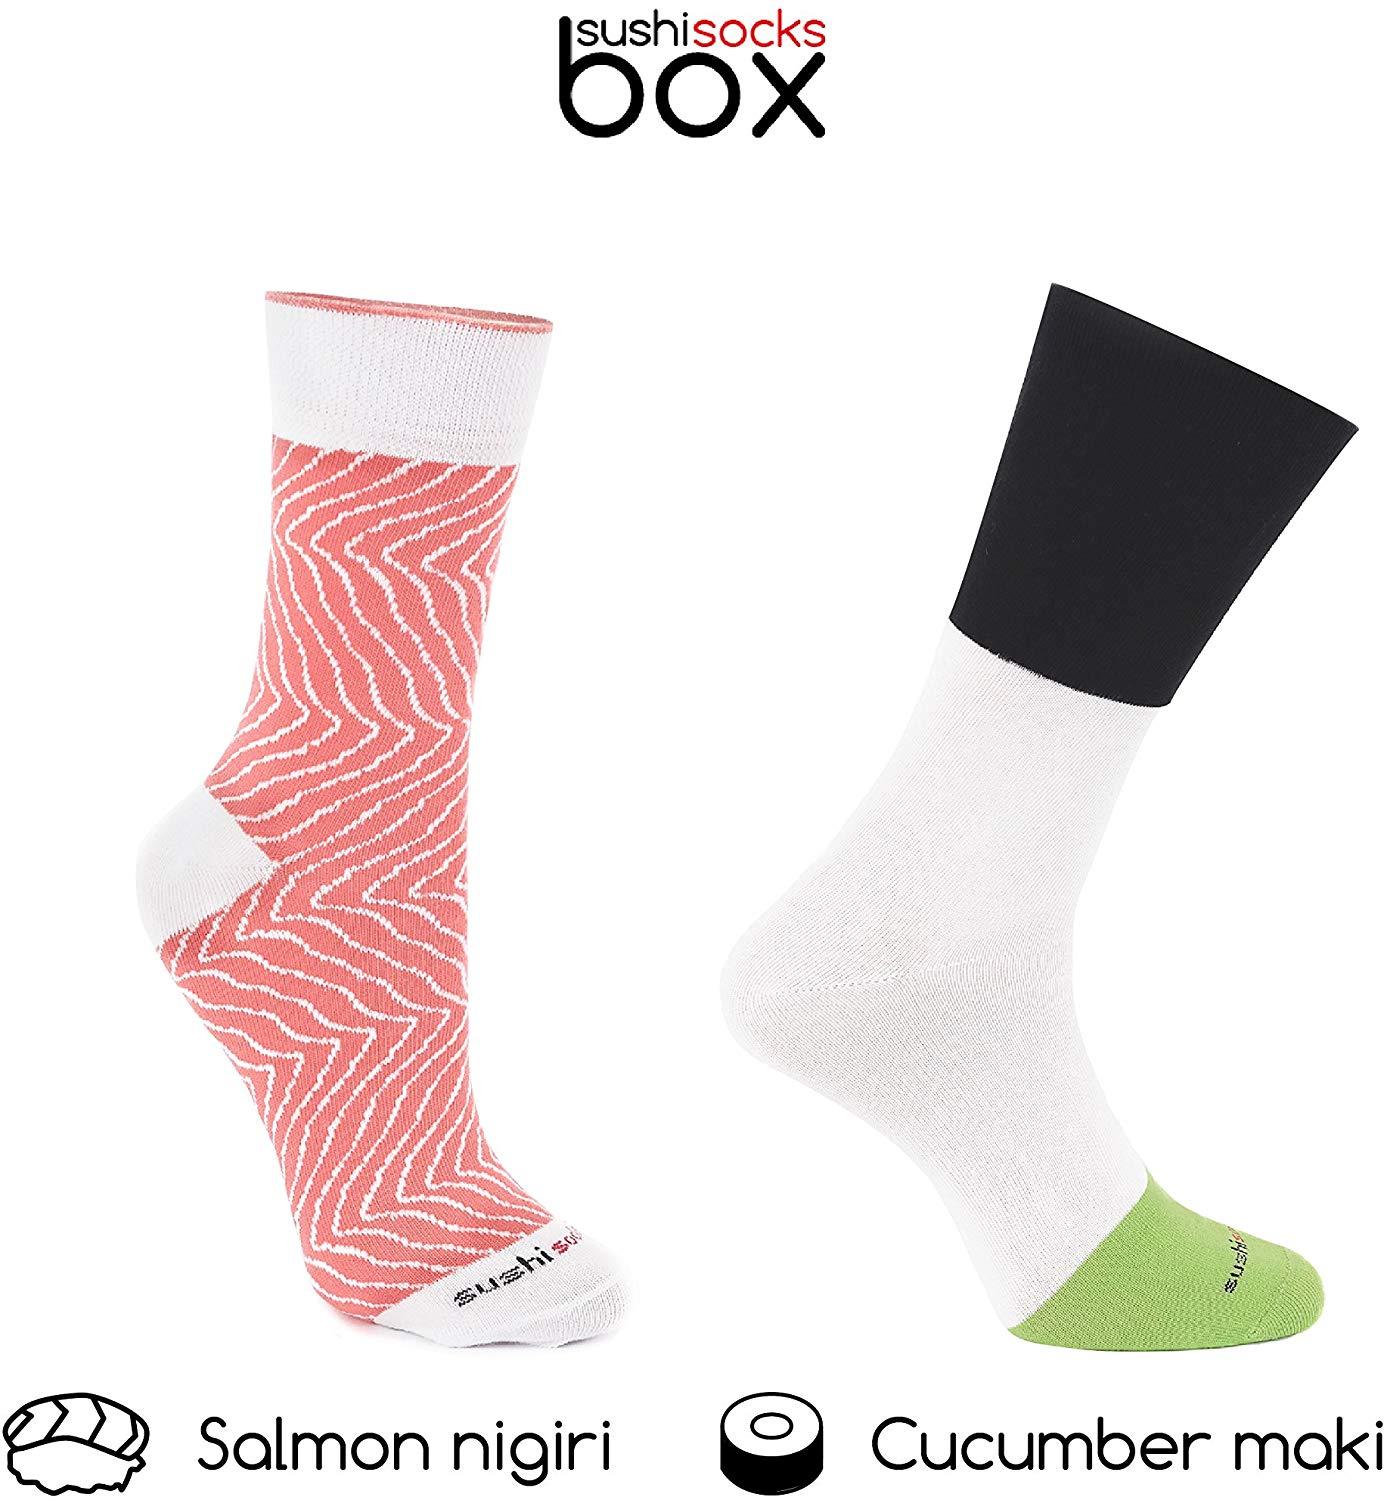 Sushi Socks Box - oddgifts.com